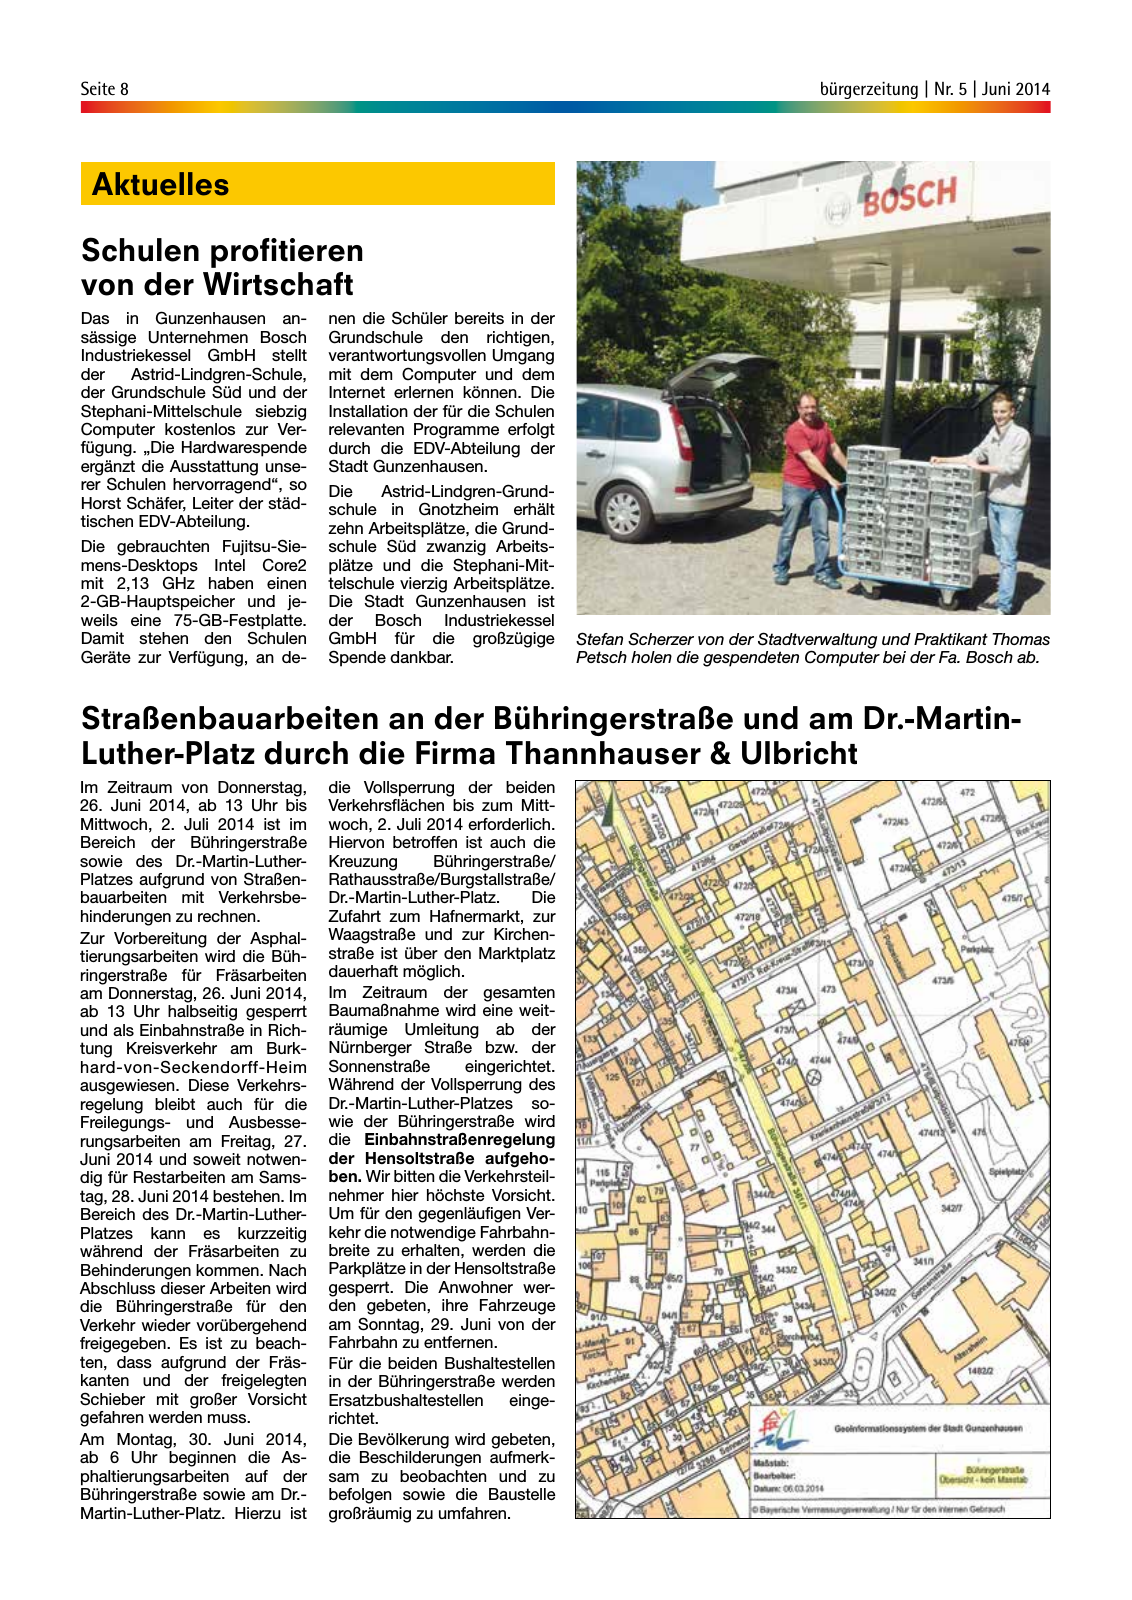 Vorschau buergerzeitung_Nr_5_Juni_2014 Seite 8